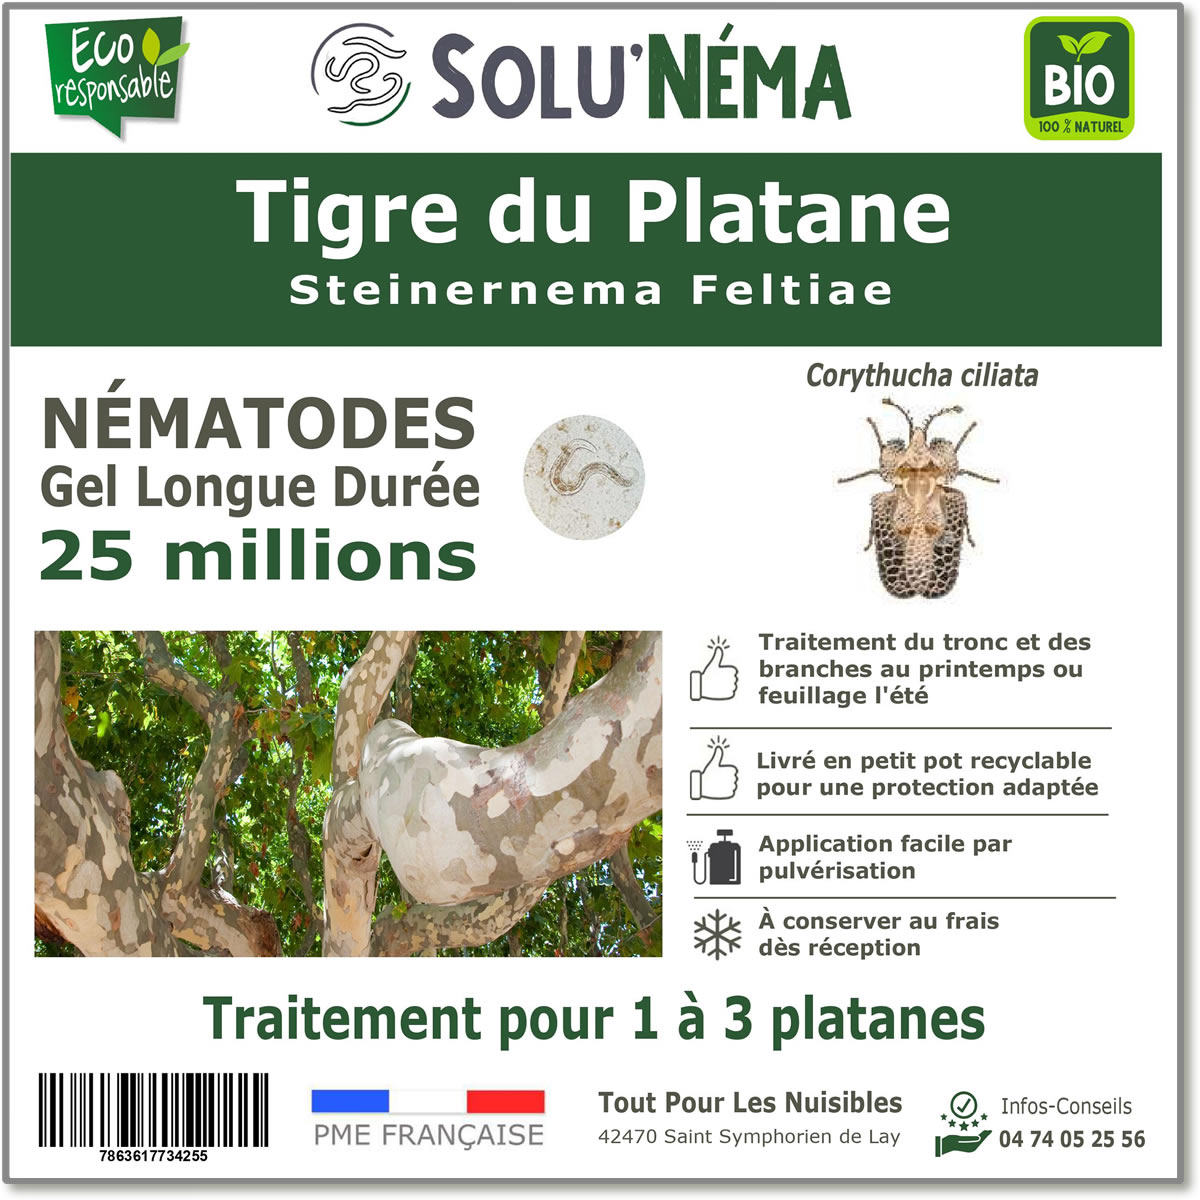 Nematodes-tigre-du-platane-25-millions